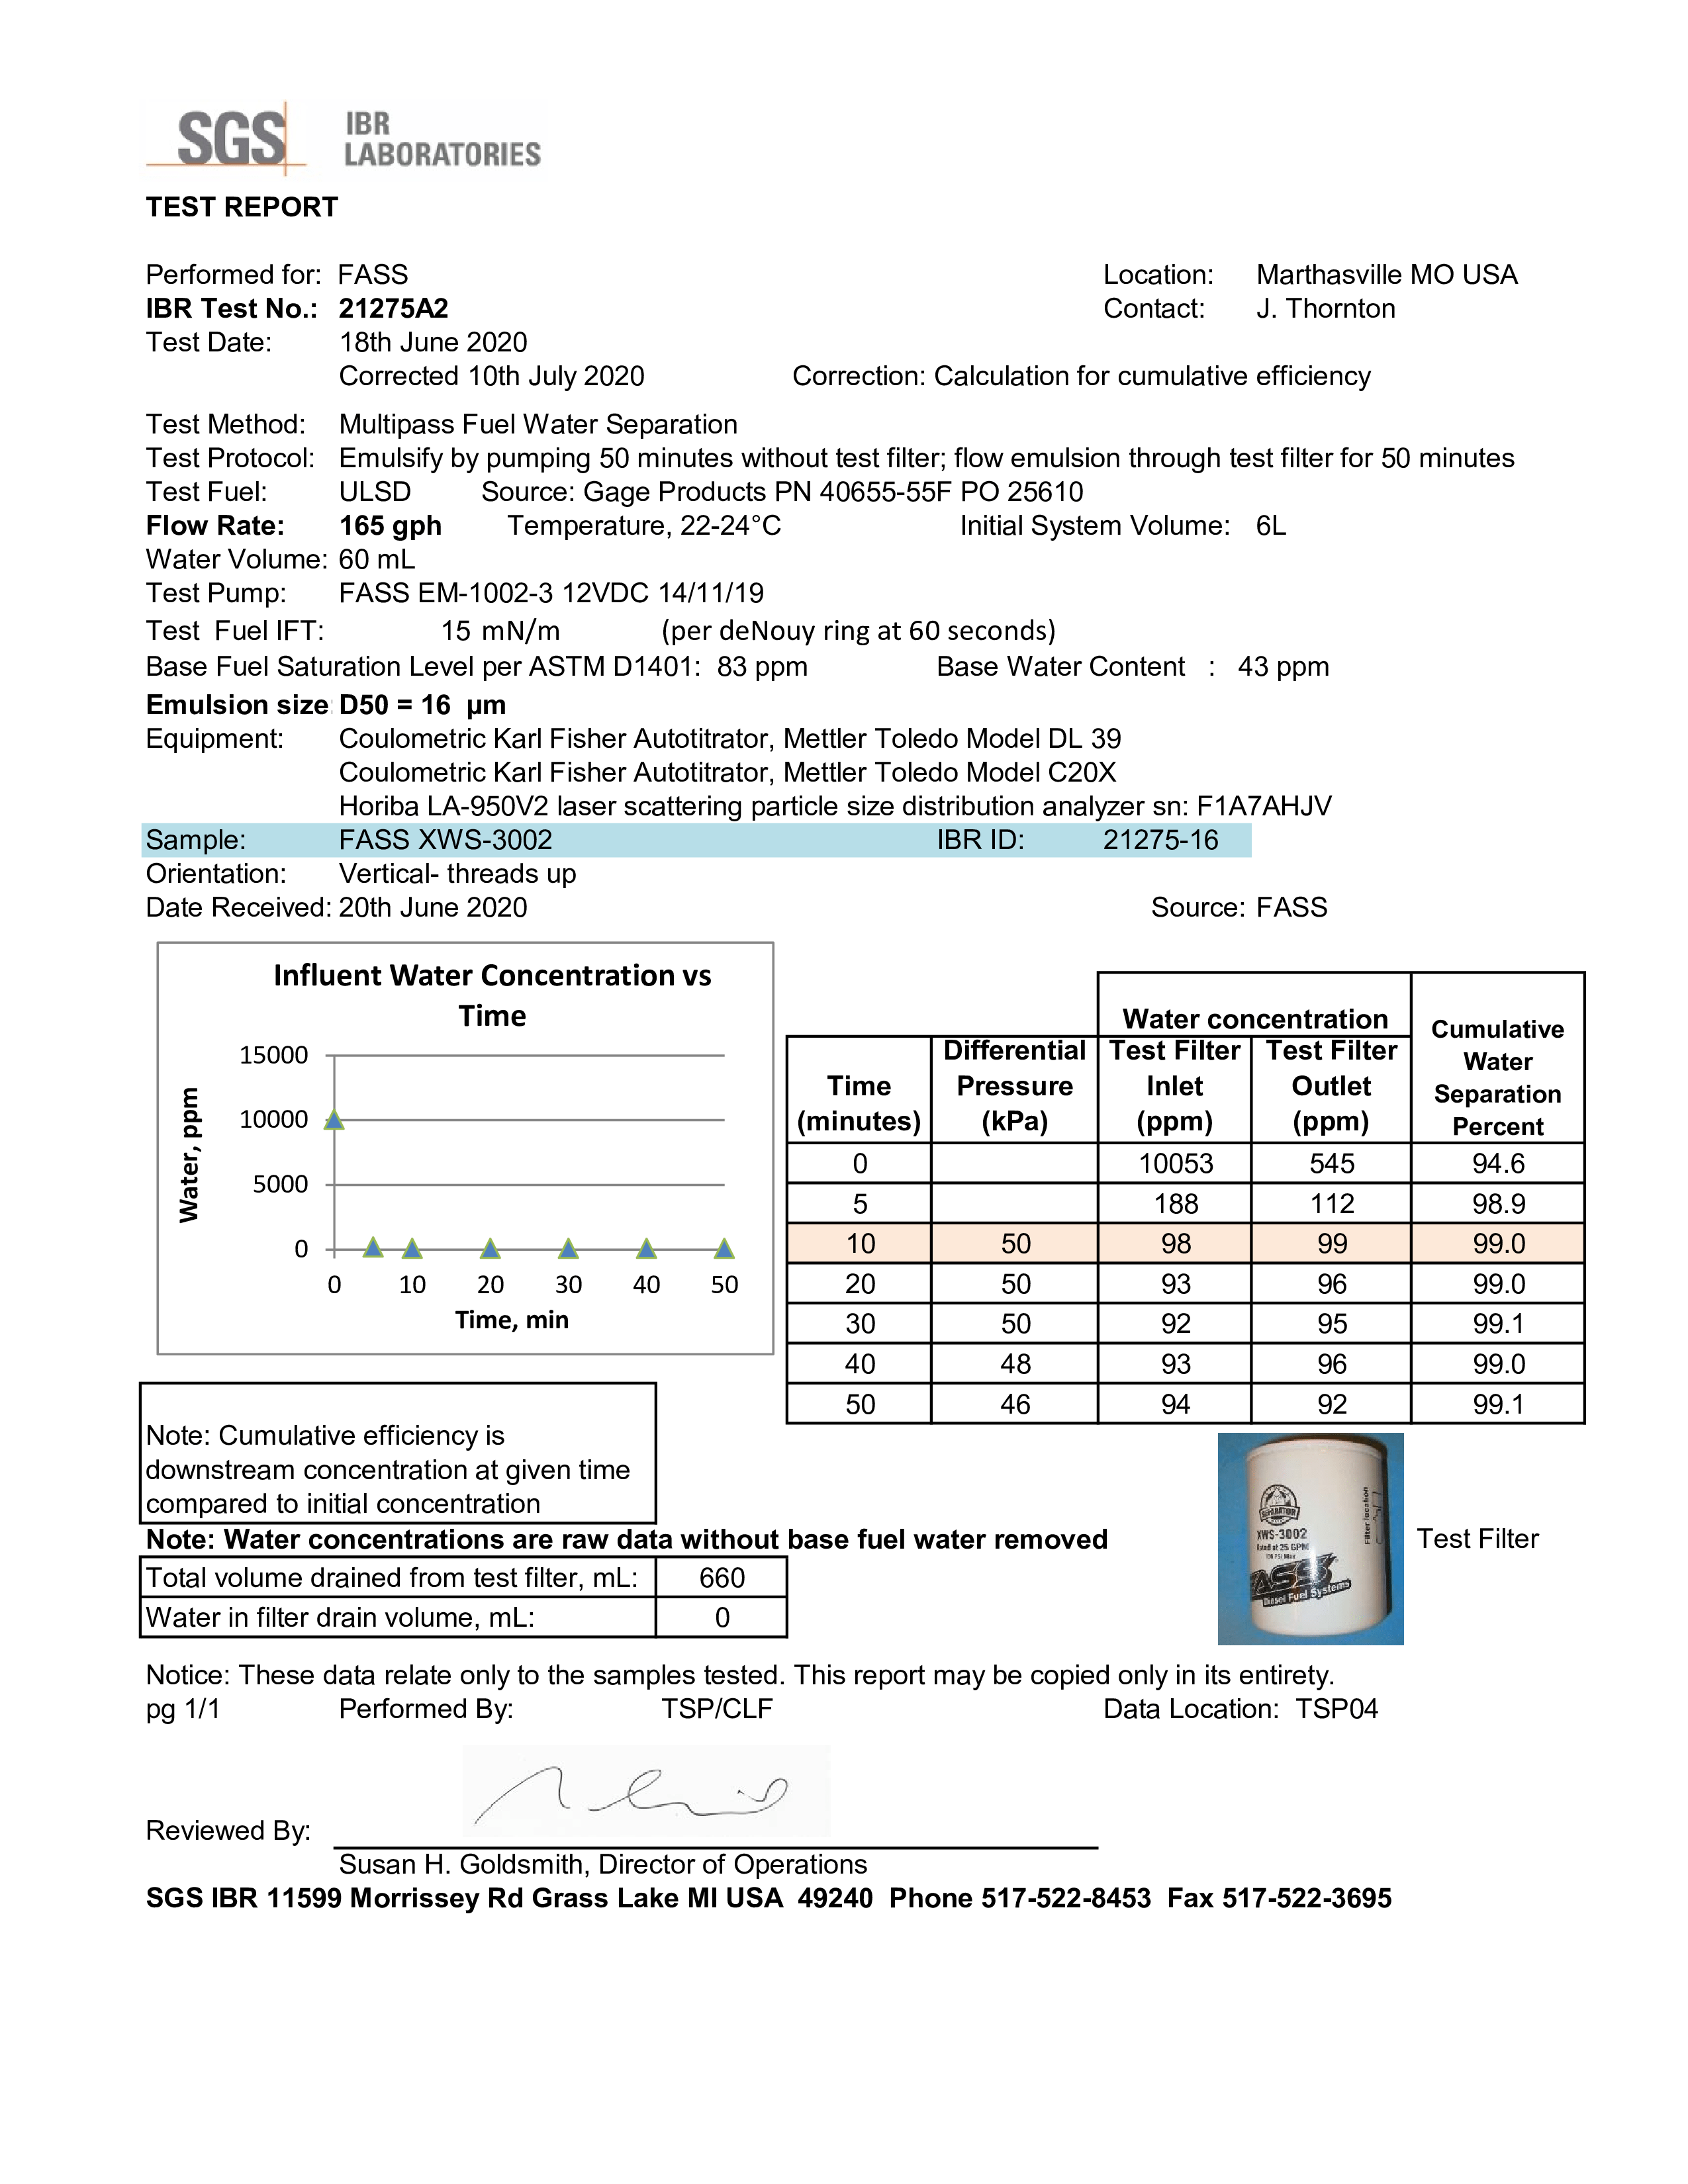 FASS fuel filter short test result